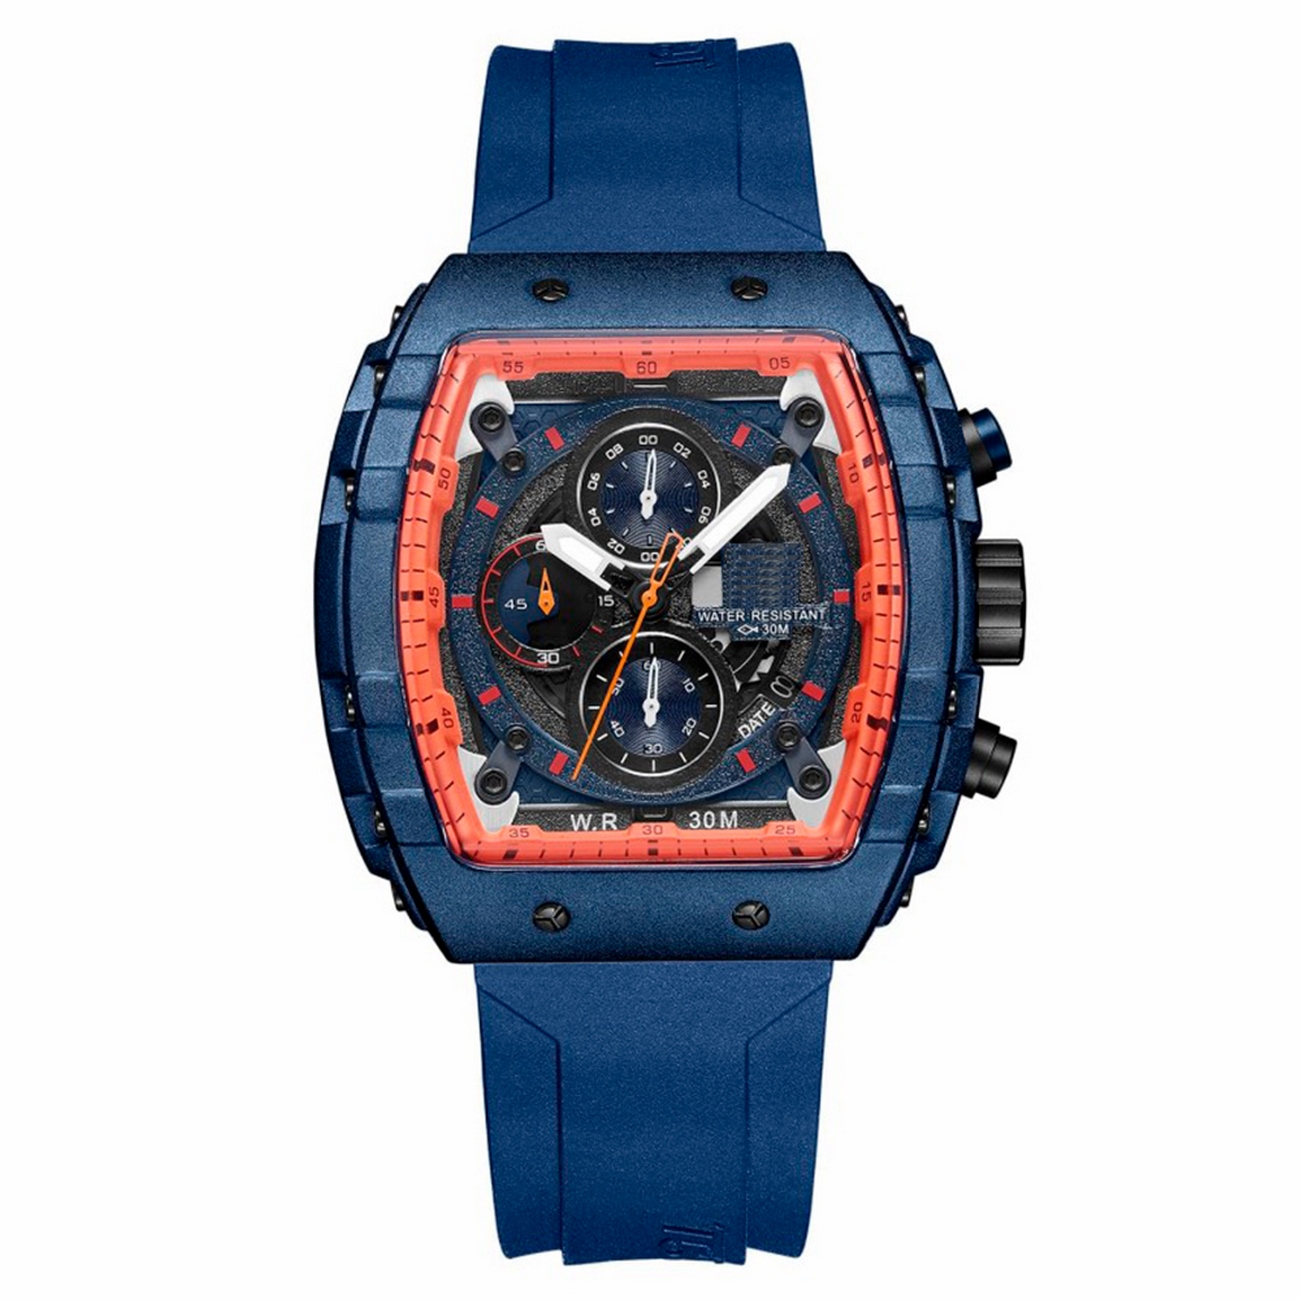 Reloj G-force Original H3996g Cronografo Azul + Estuche